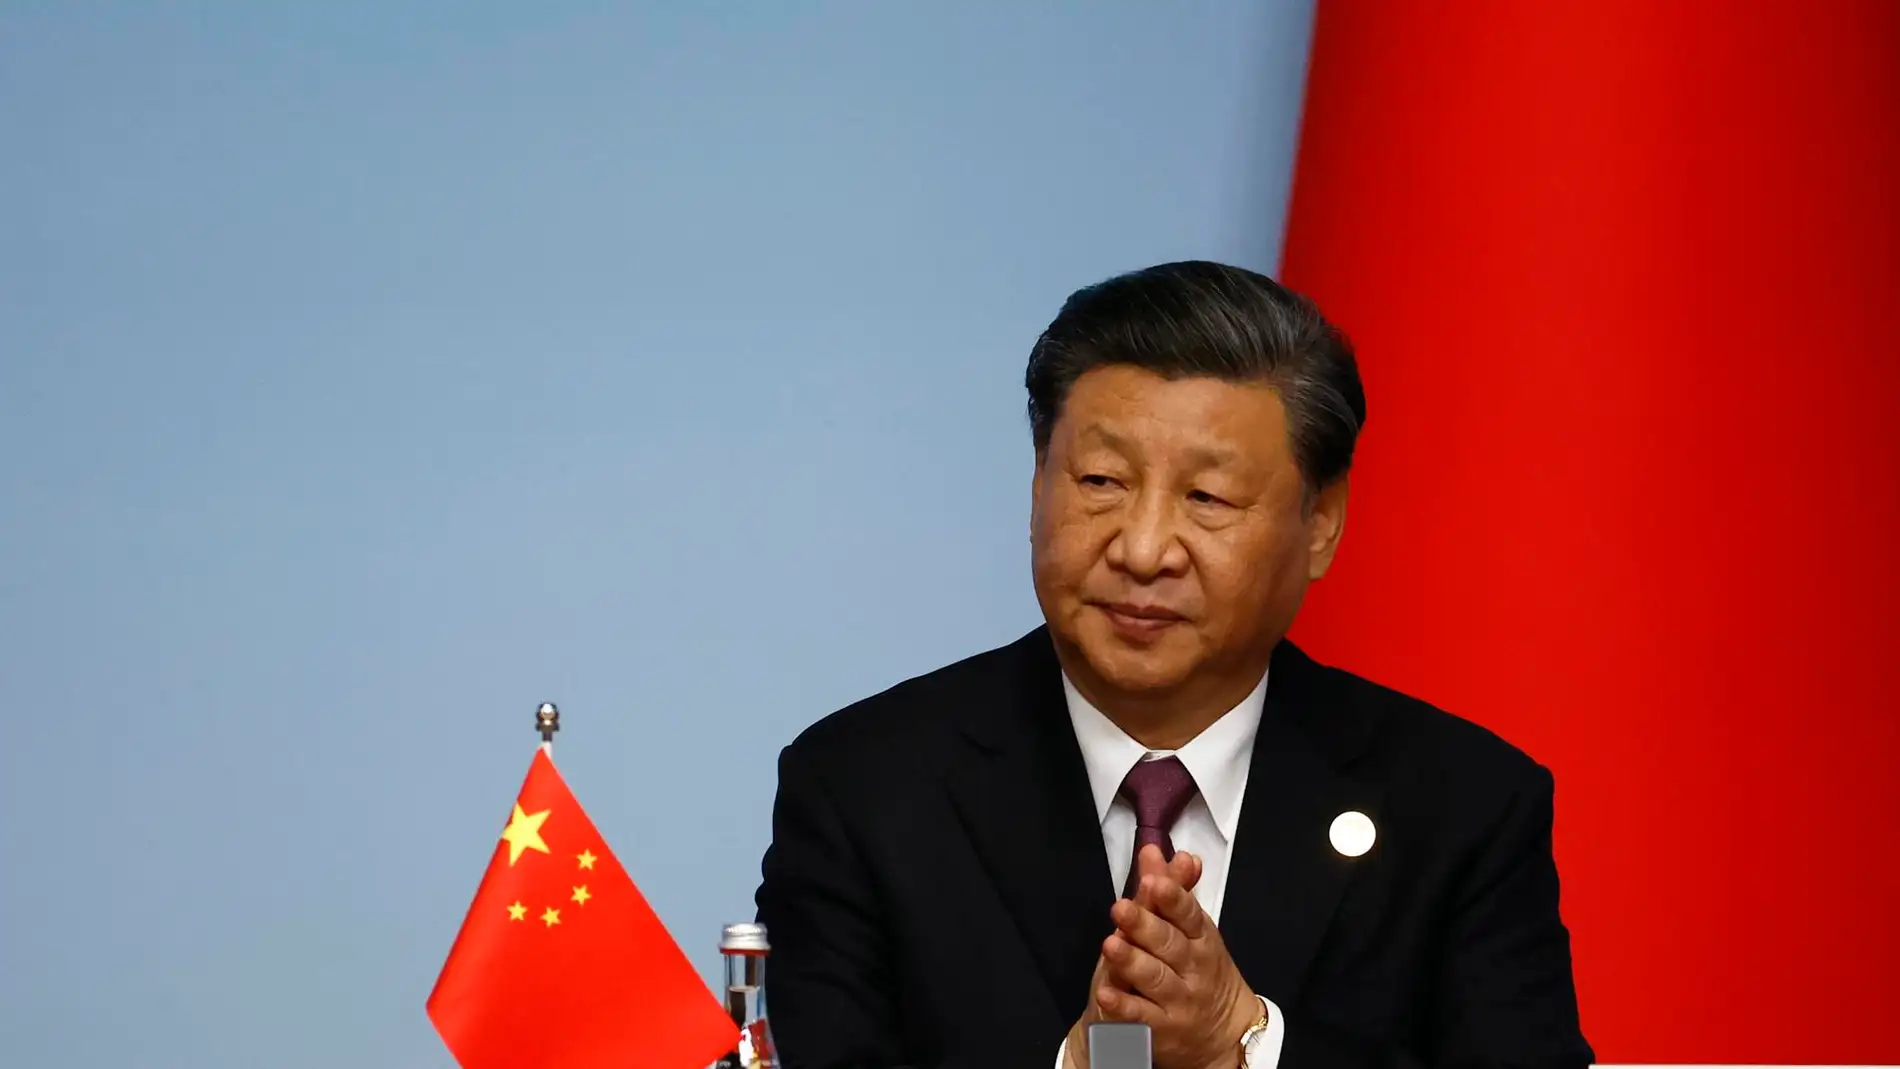 Xi Jinping ofrece apoyo a Rusia en "intereses fundamentales" y destaca la buena relación con Moscú